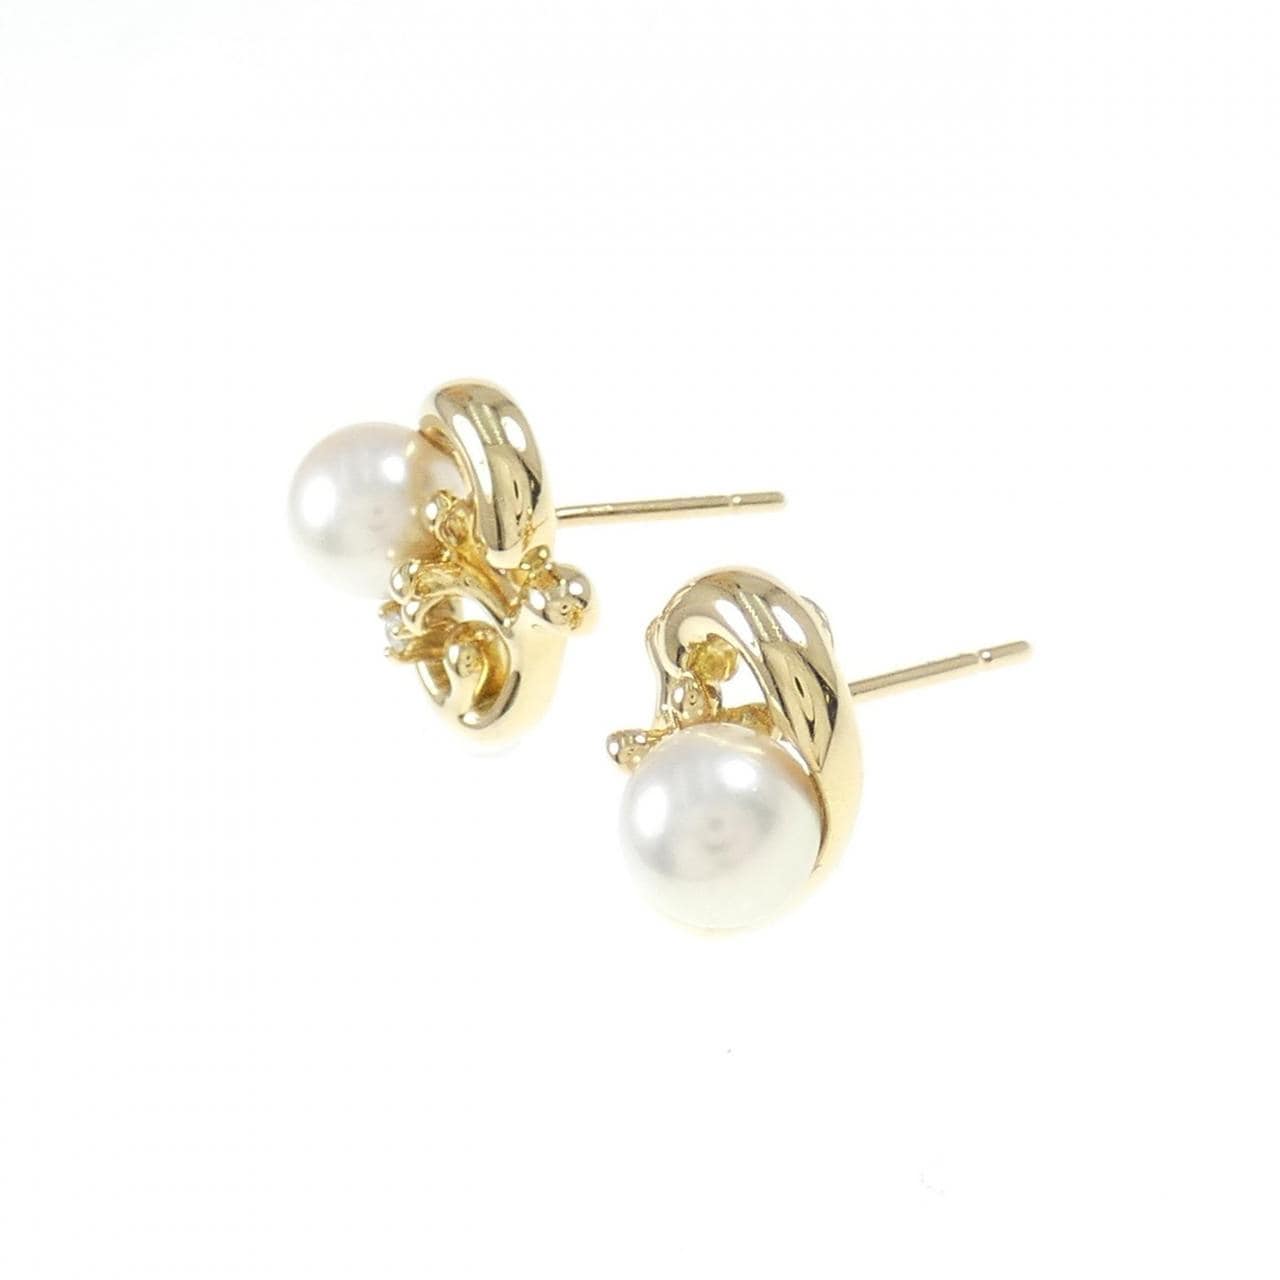 K18YG Akoya pearl earrings 6.6mm